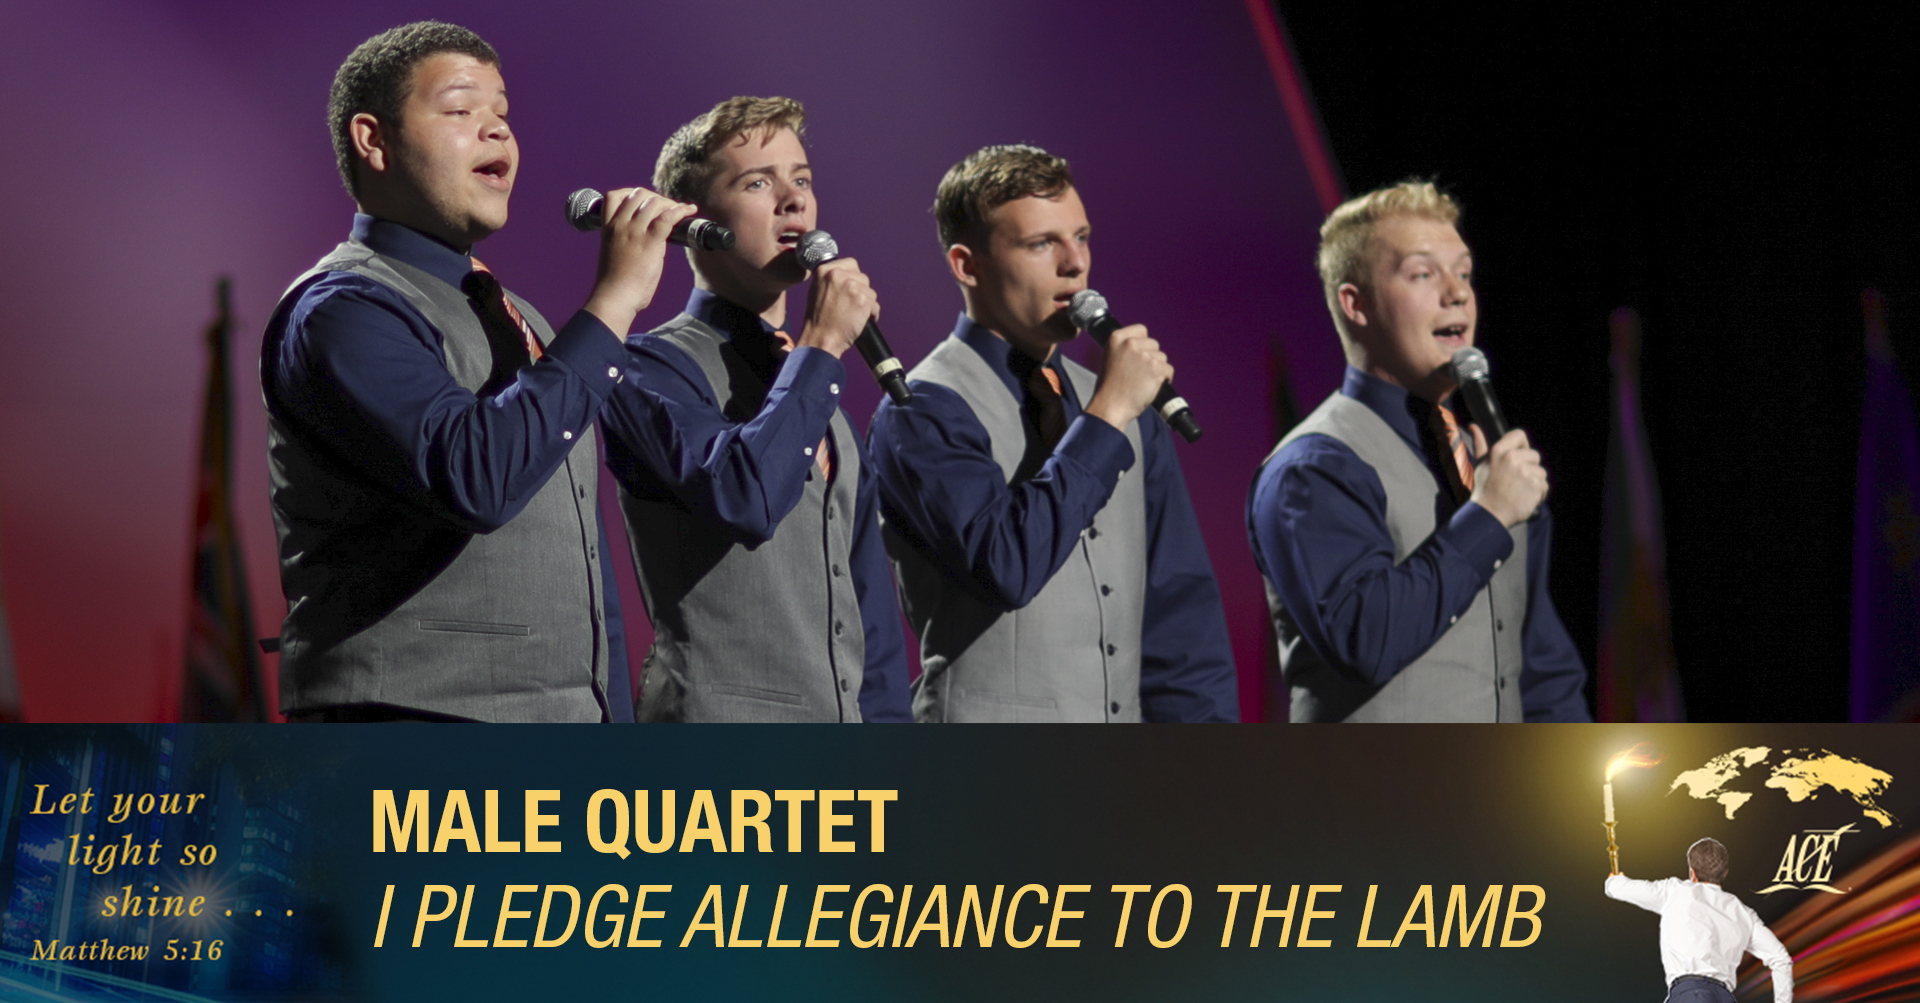 Male Quartet, "I Pledge Allegiance To The Lamb" - ISC 2019